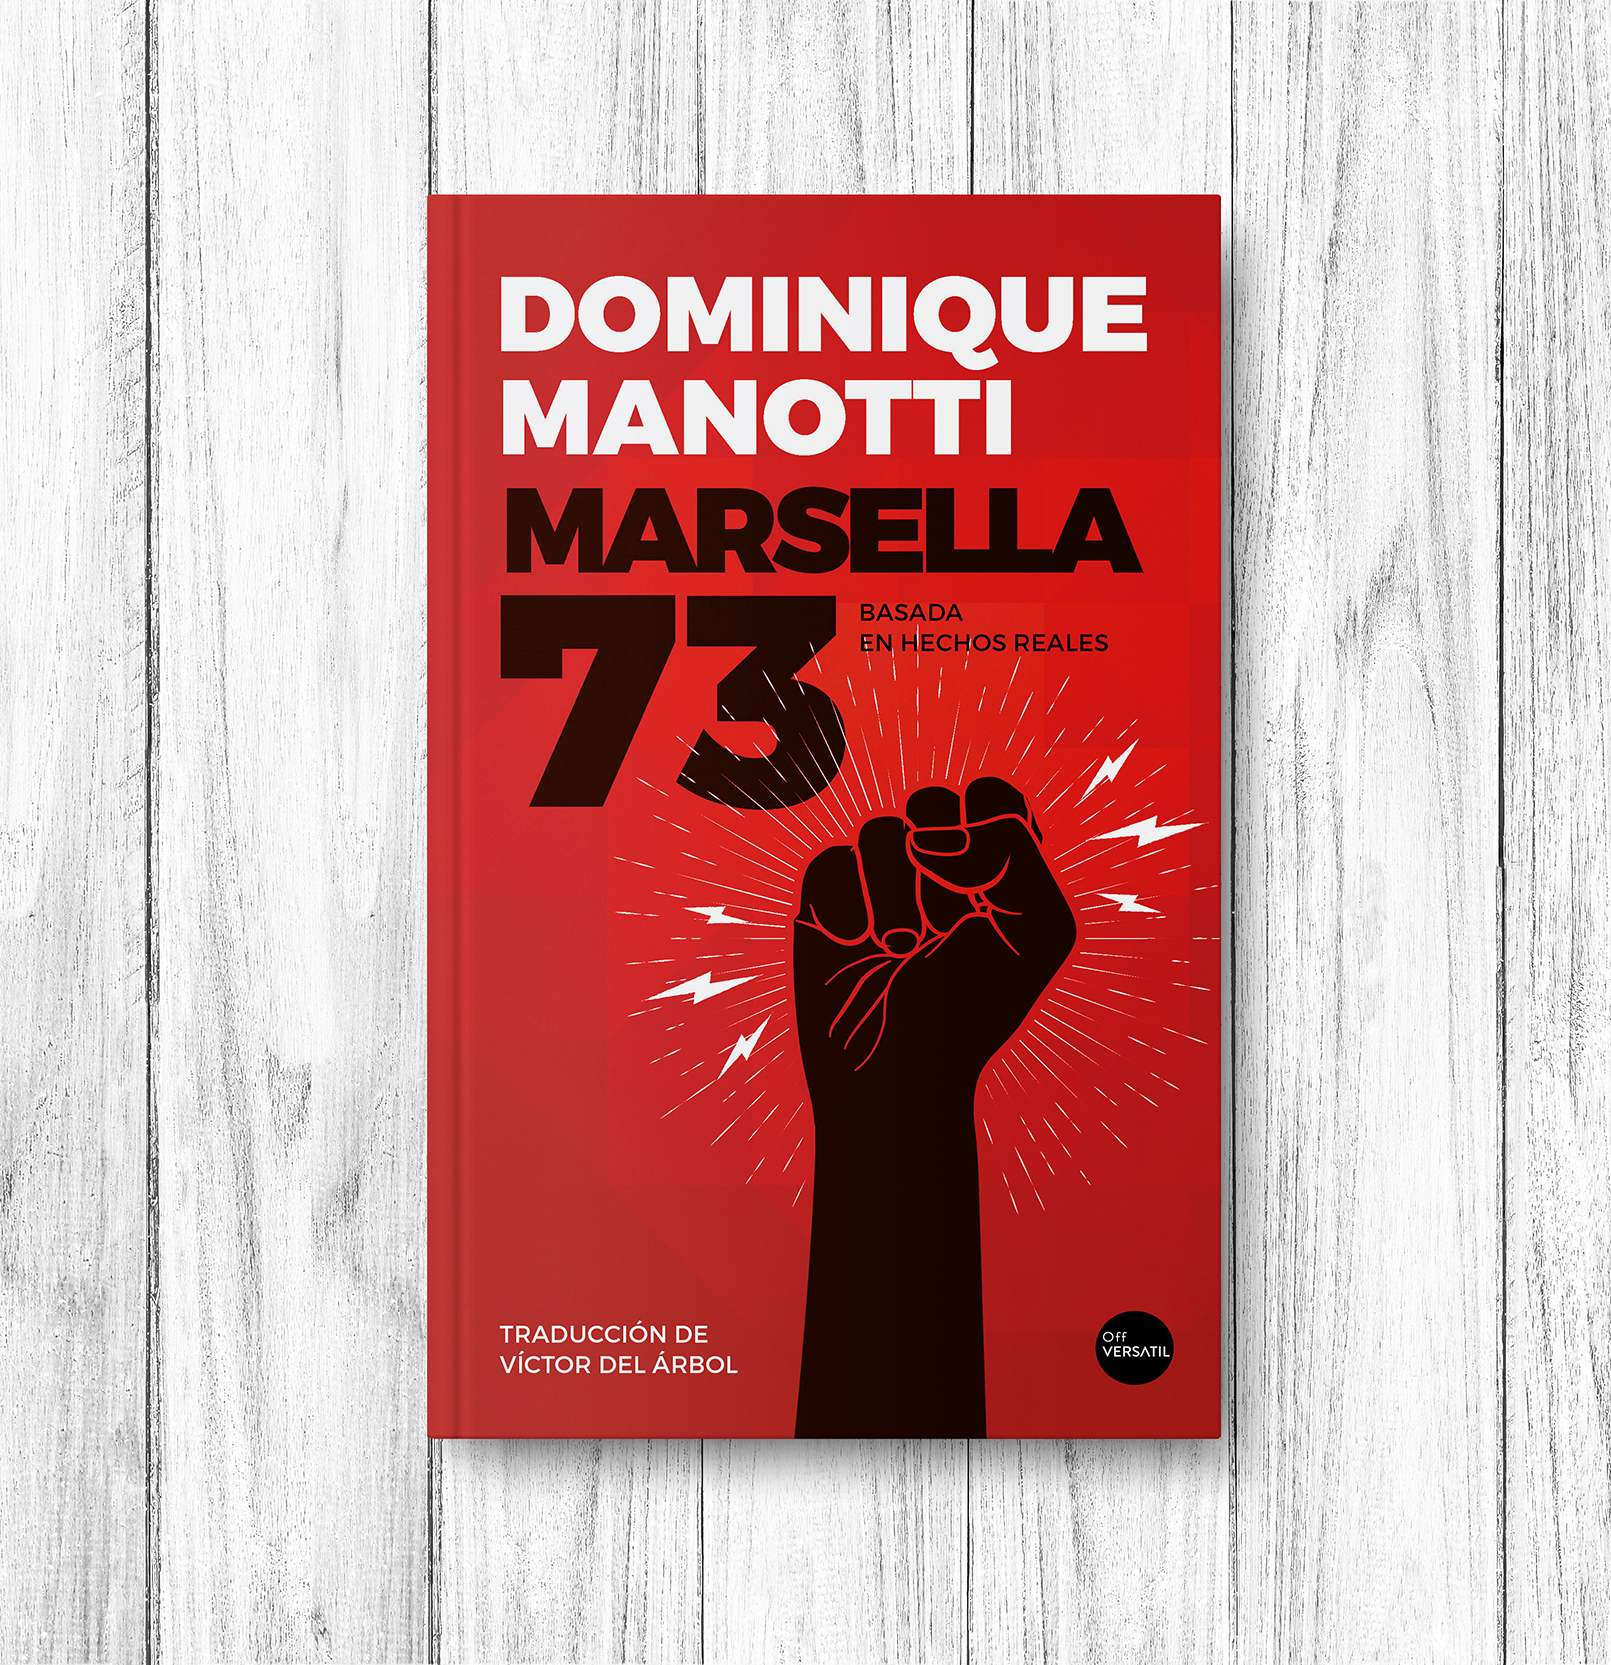 Marsella 73